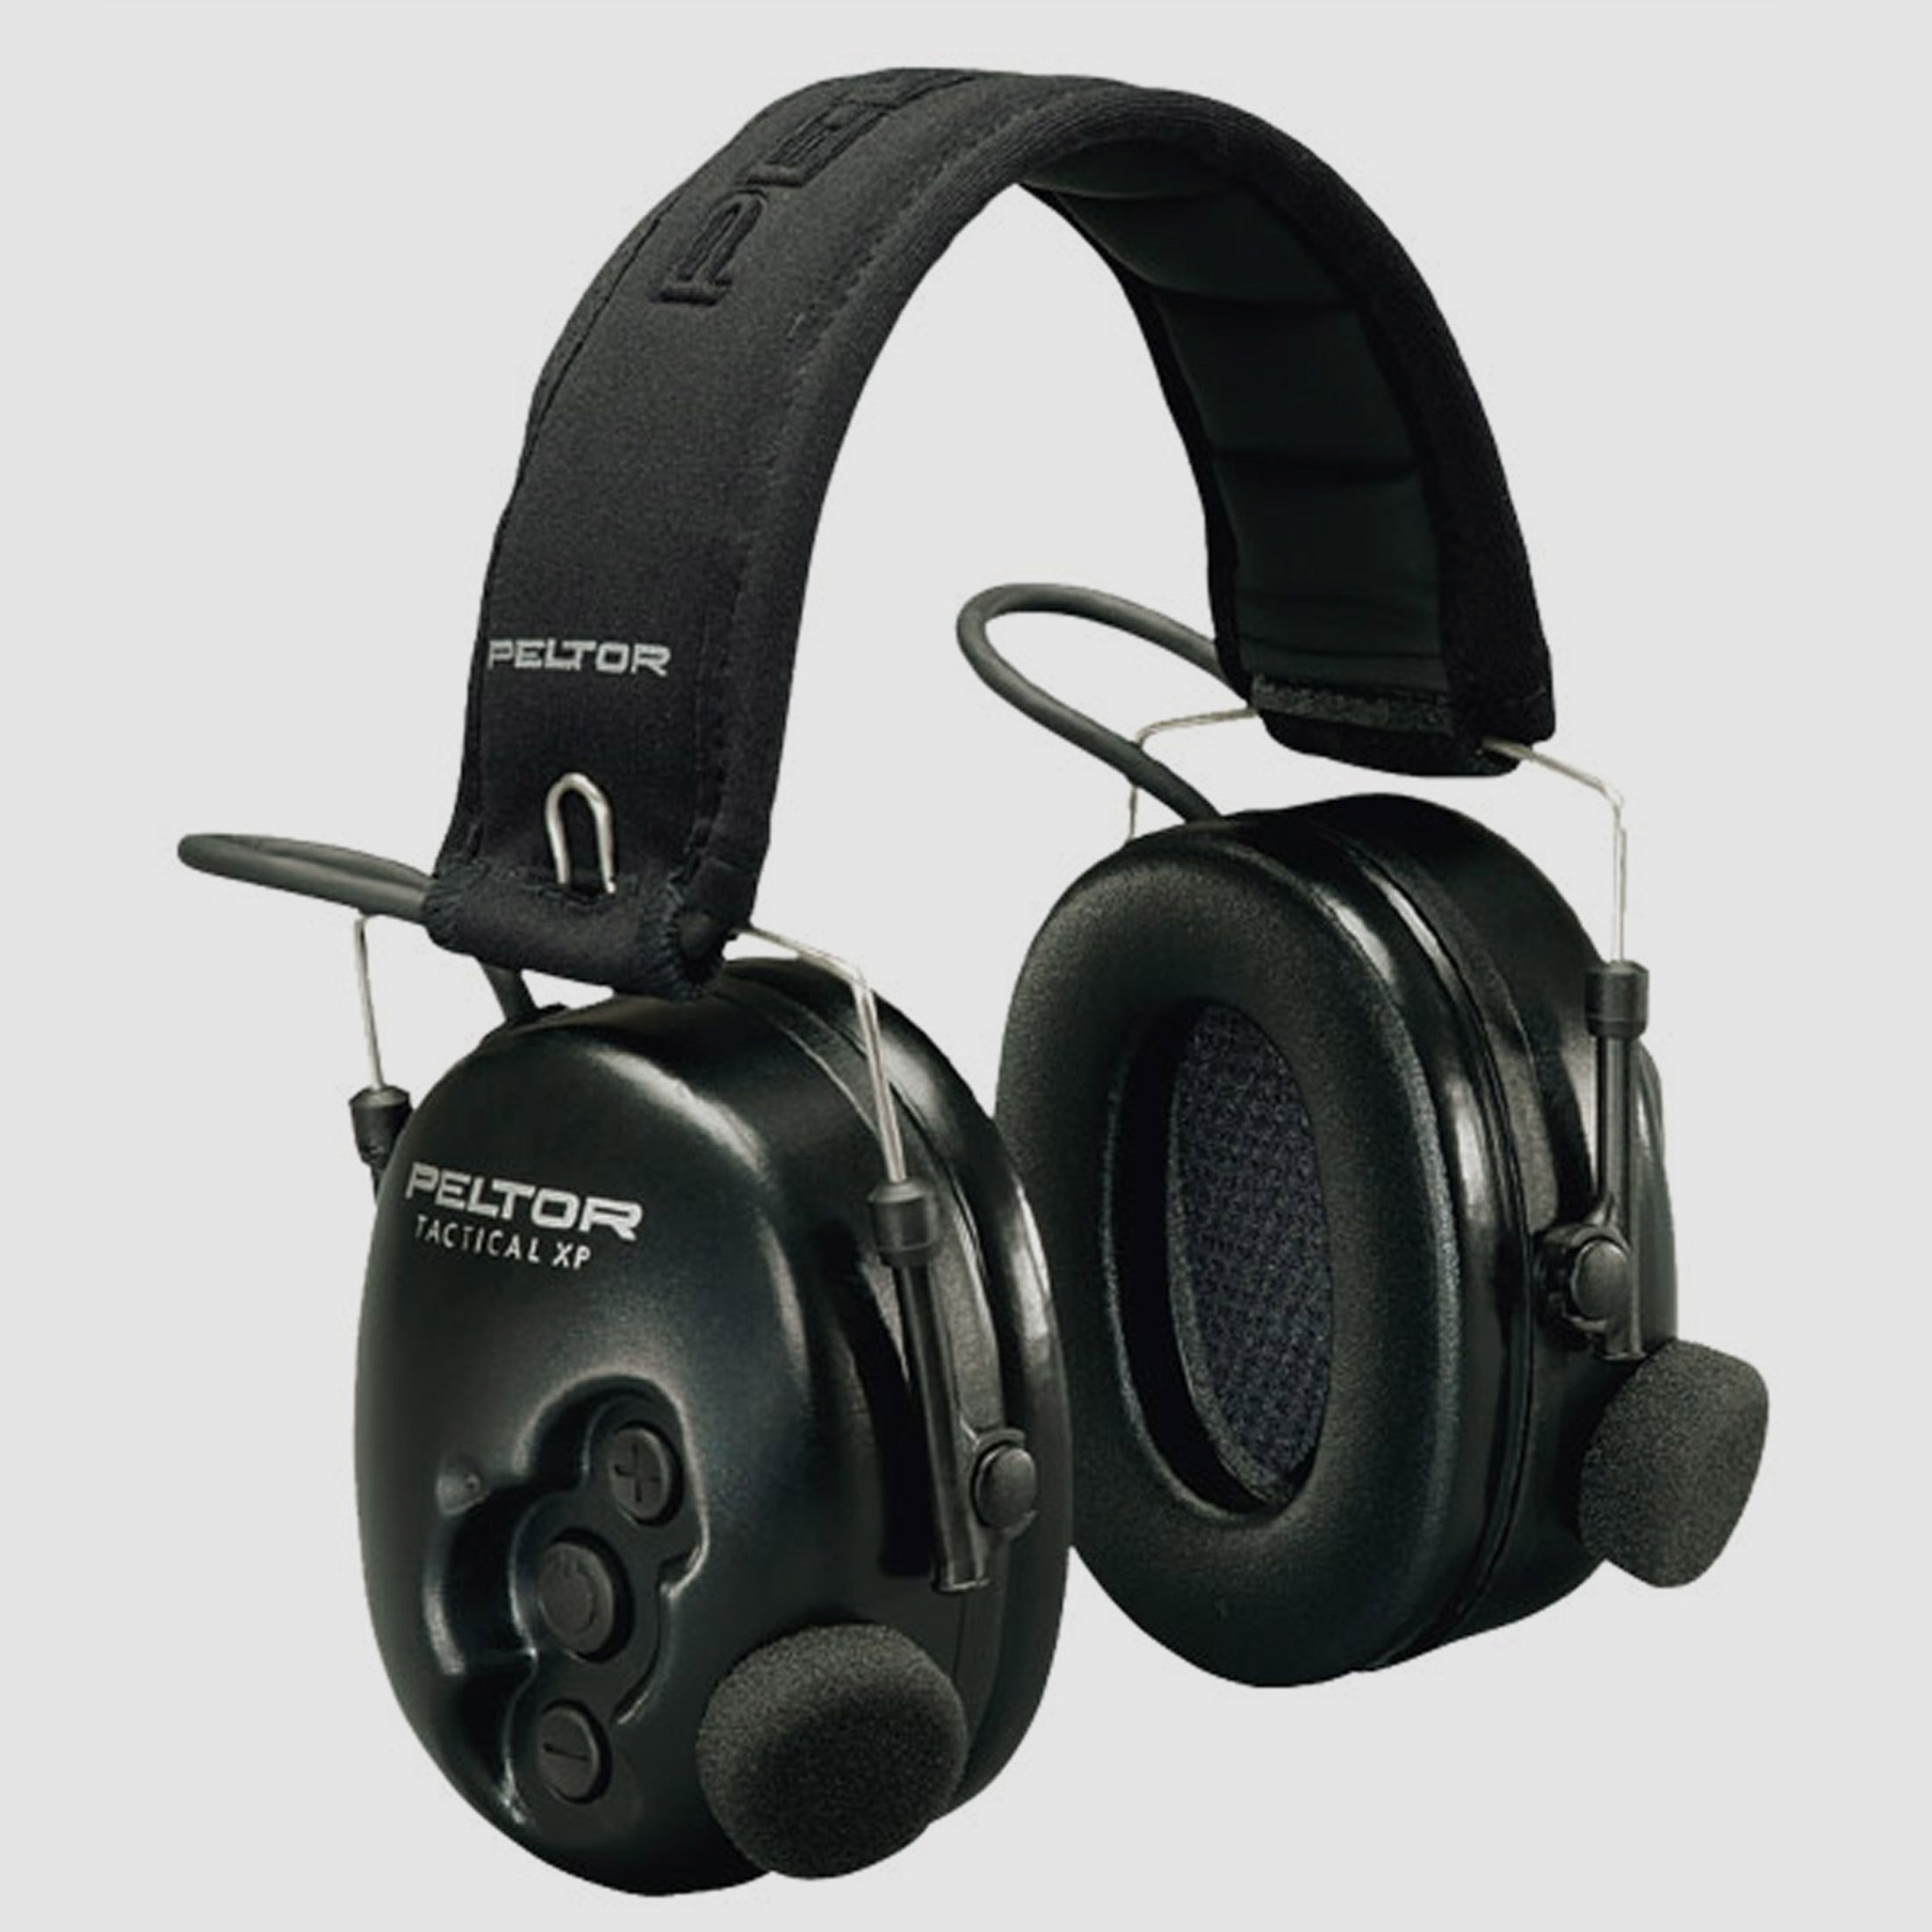 3M Peltor Gehörschutz Tactical XP   schwarz